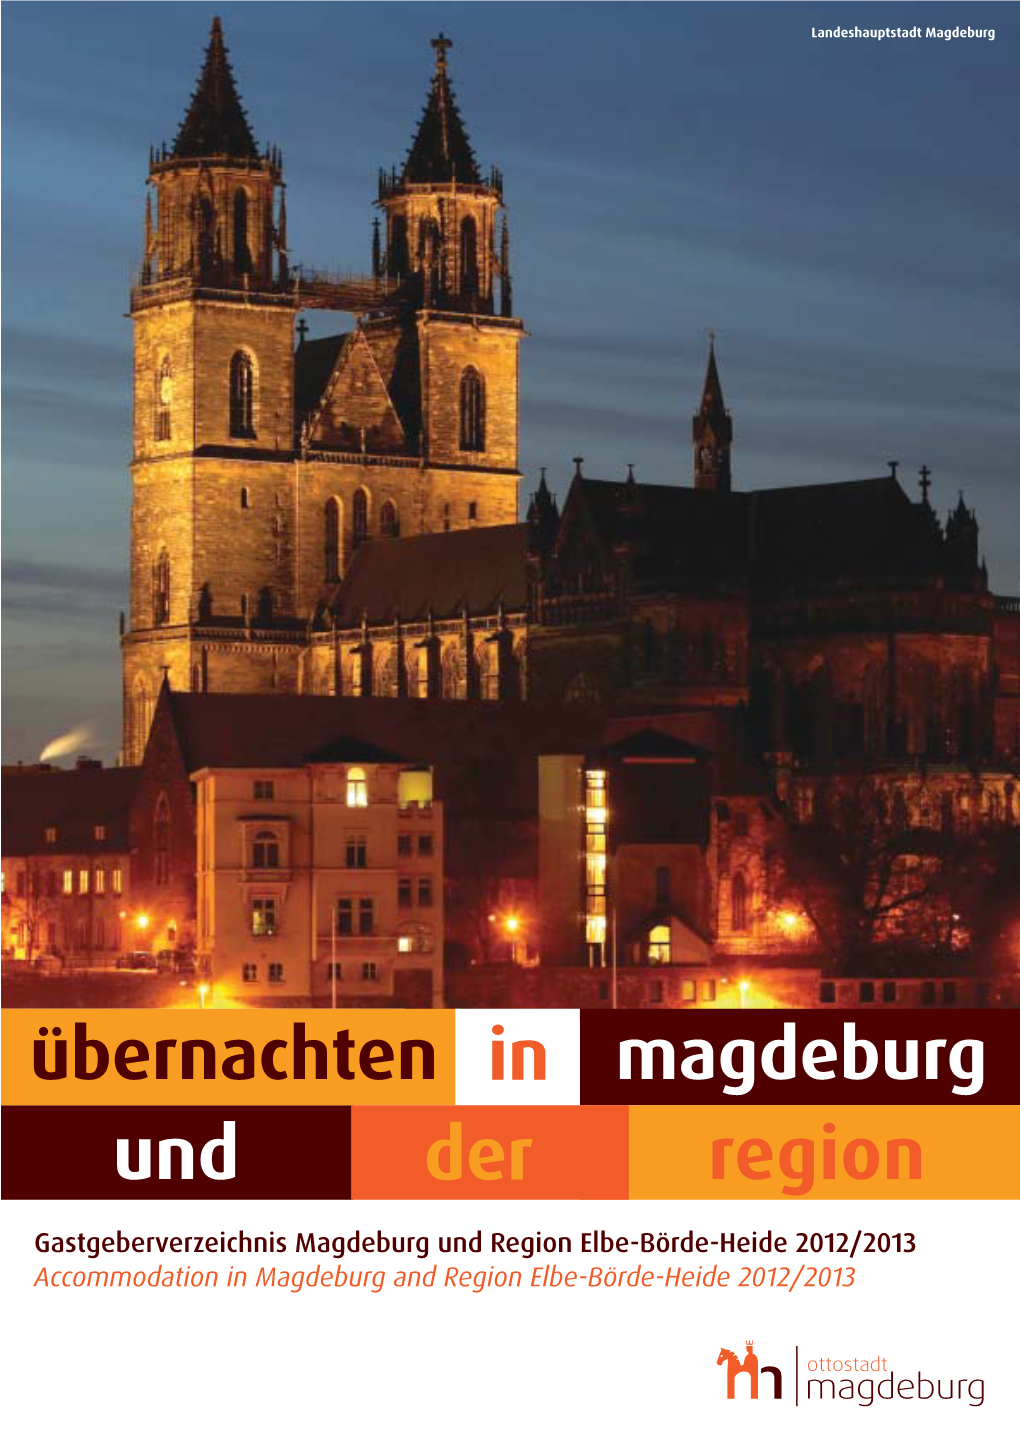 Magdeburg Marketing Kongress Und Tourismus Gmbh Magdeburger Tourismusverband Tourist-Information Magdeburg Elbe-Börde-Heide E.V